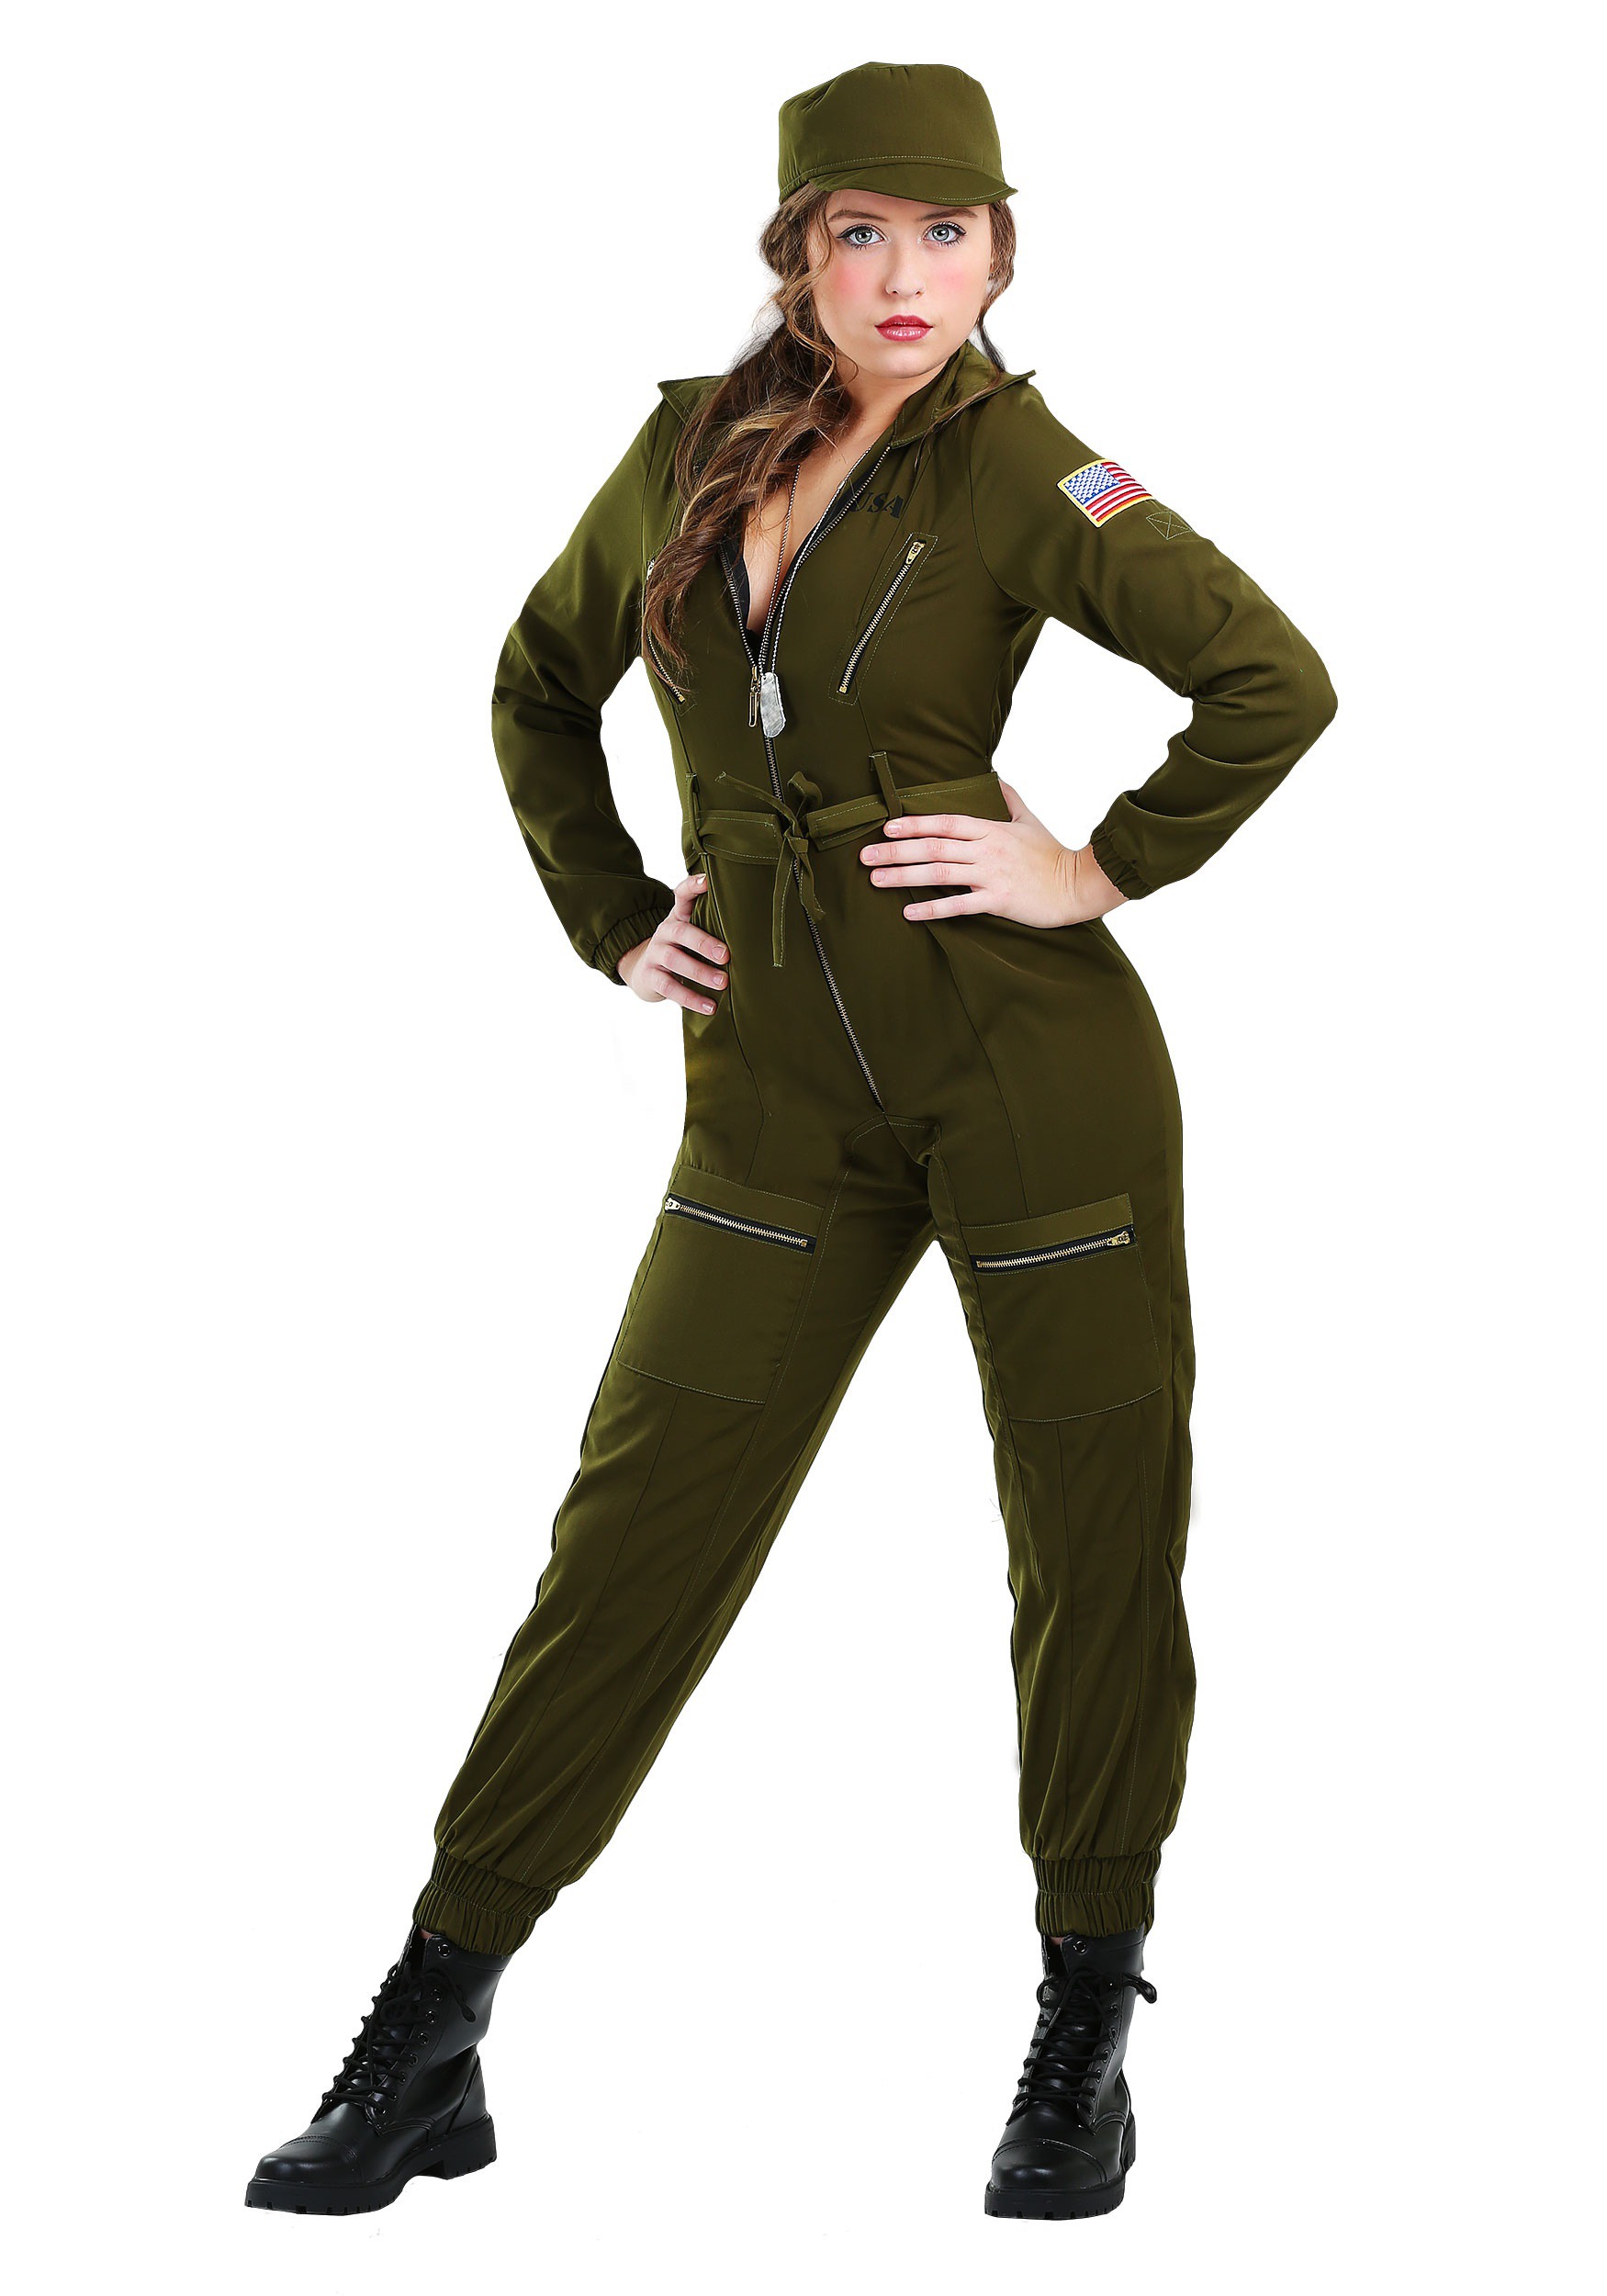 Army Flightsuit Women's Fancy Dress Costume , Army Fancy Dress Costumes For Women